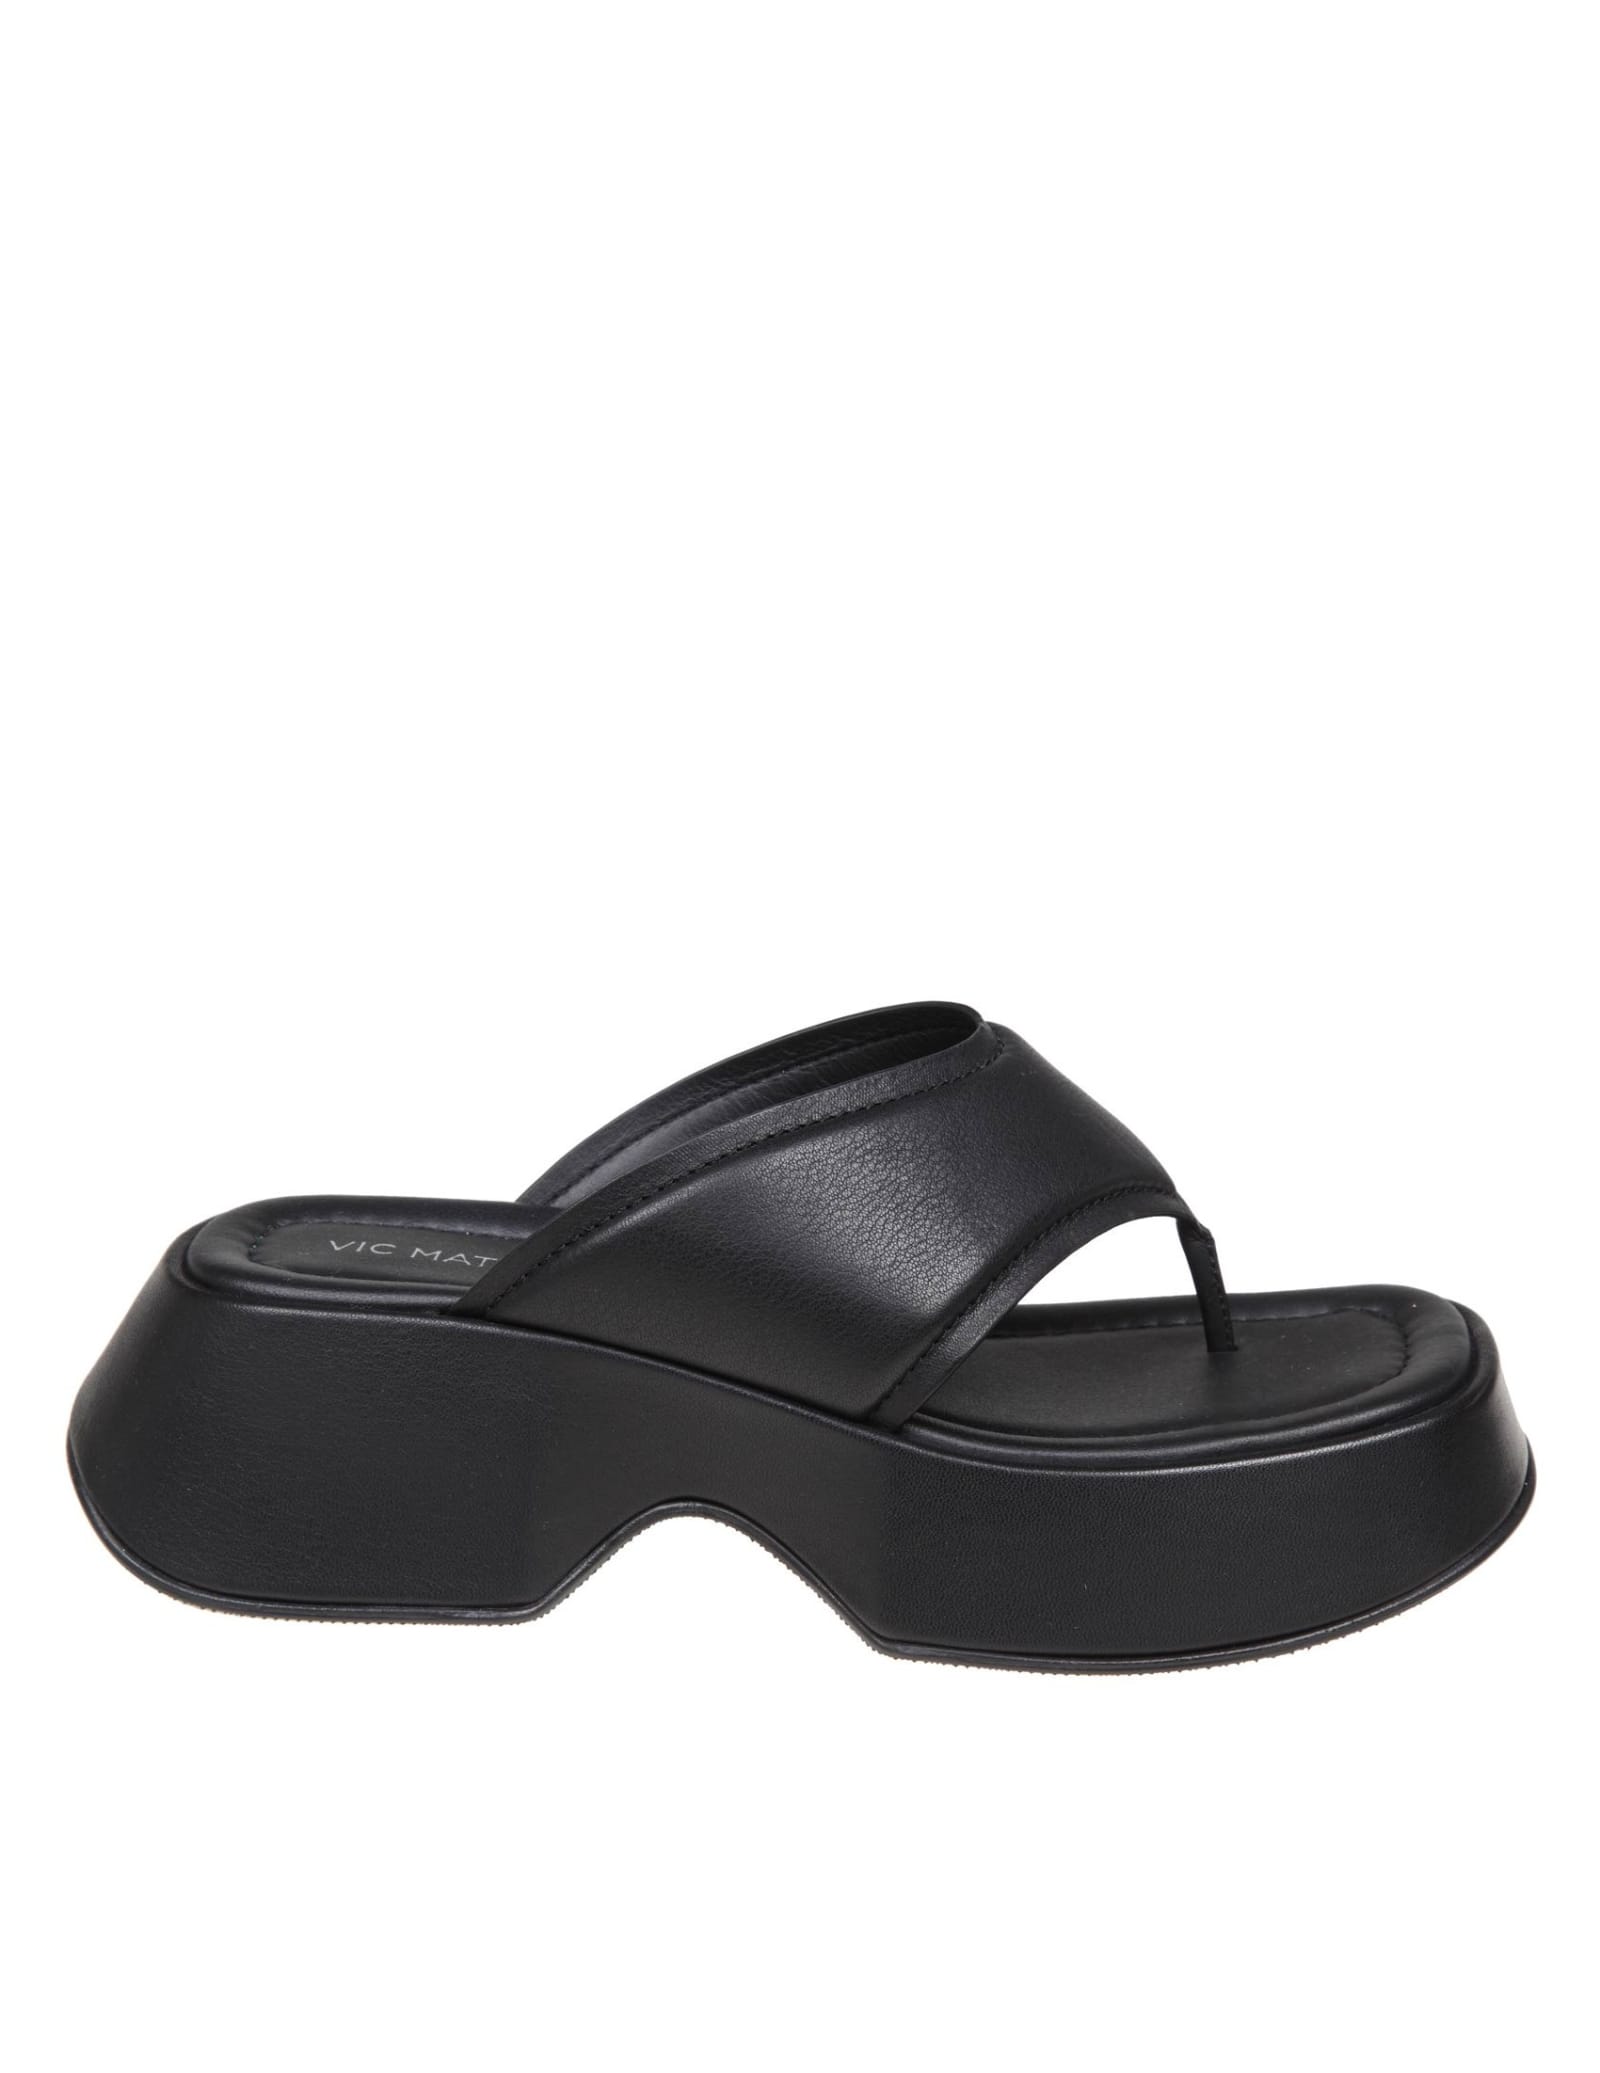 Vic Matié Black Leather Thong Sandals